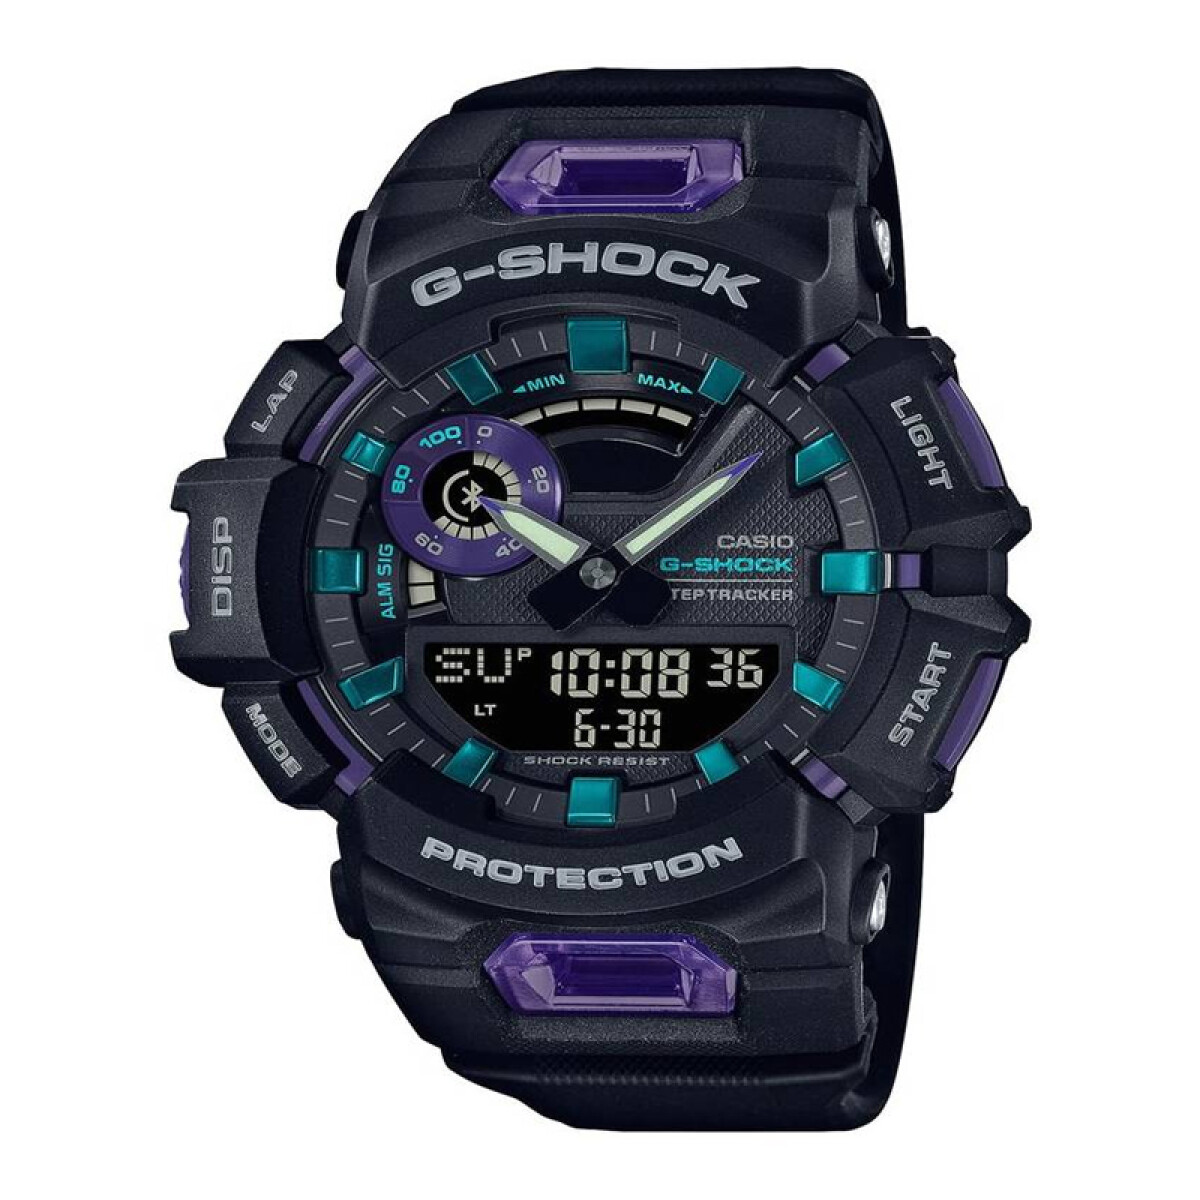 Reloj G-shock de Caballero Analógico-Digital - GBA-900-1A6DR 